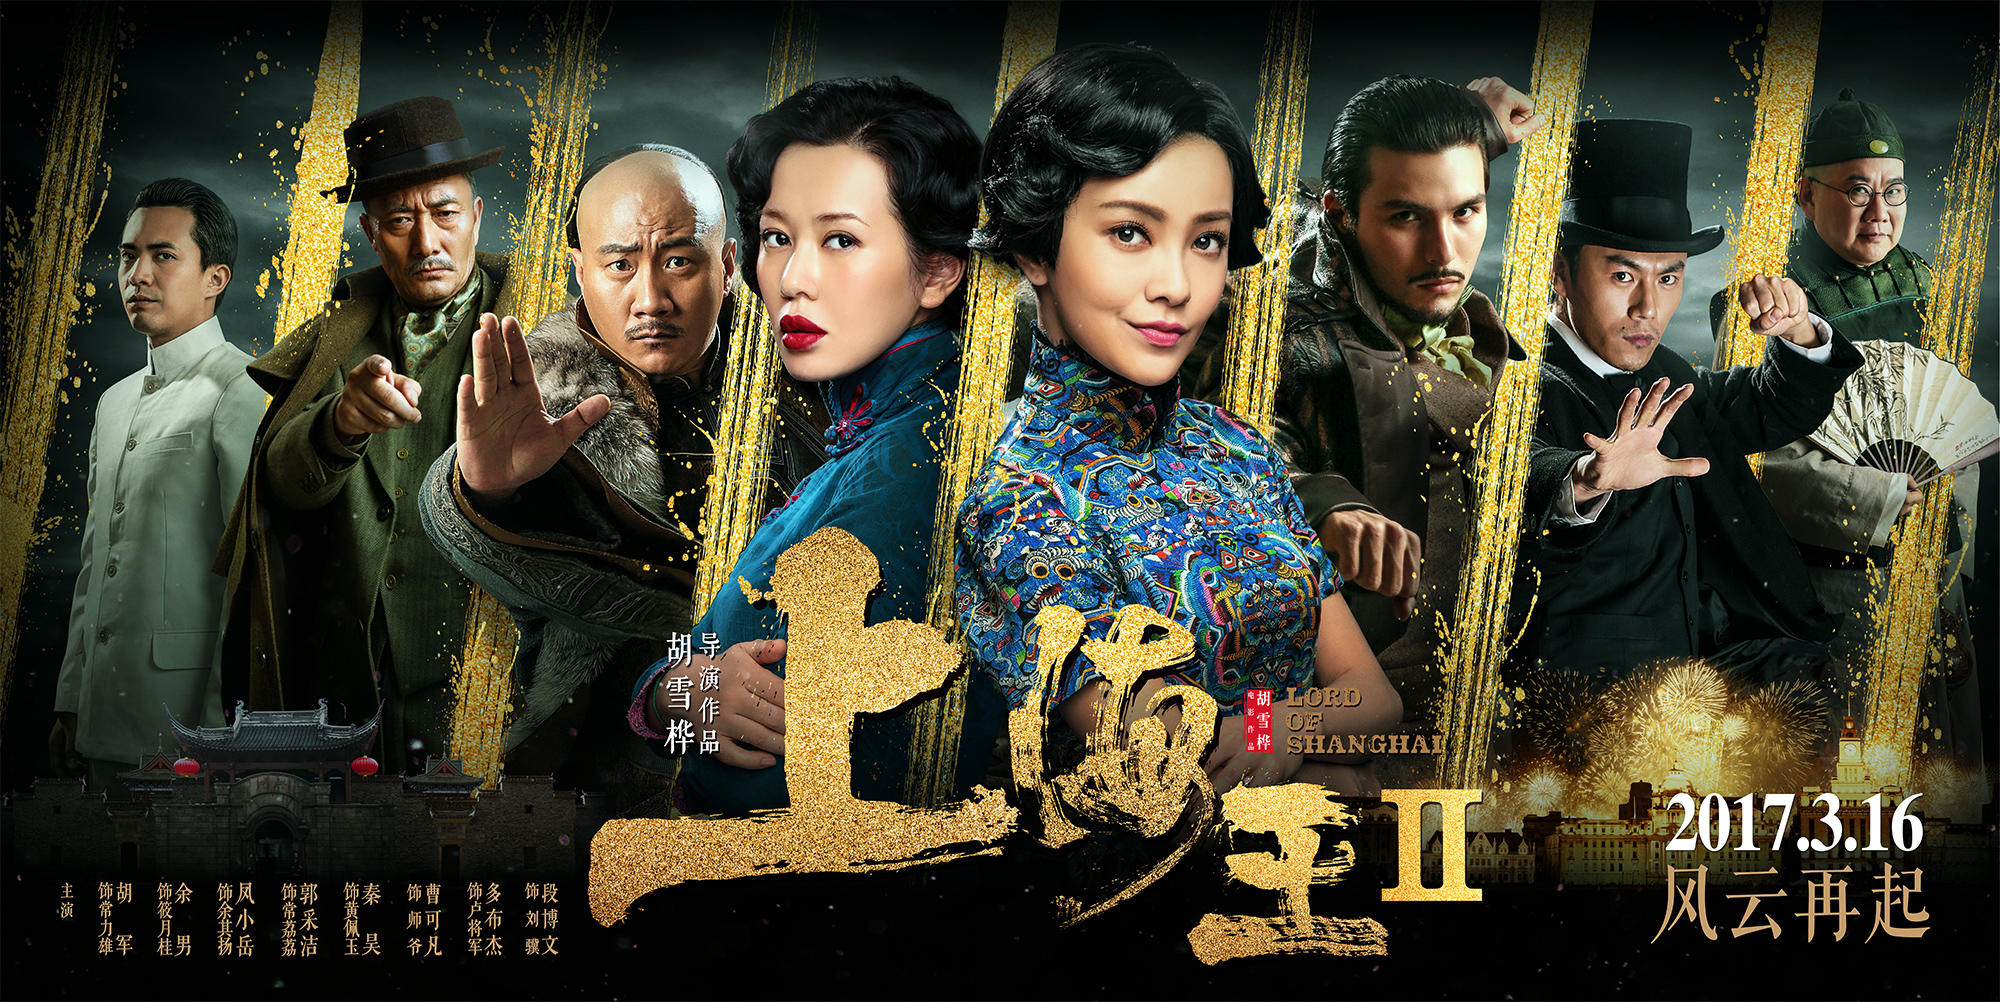 Xem Phim Vua Thượng Hải 2, Lord Of Shanghai 2 2020